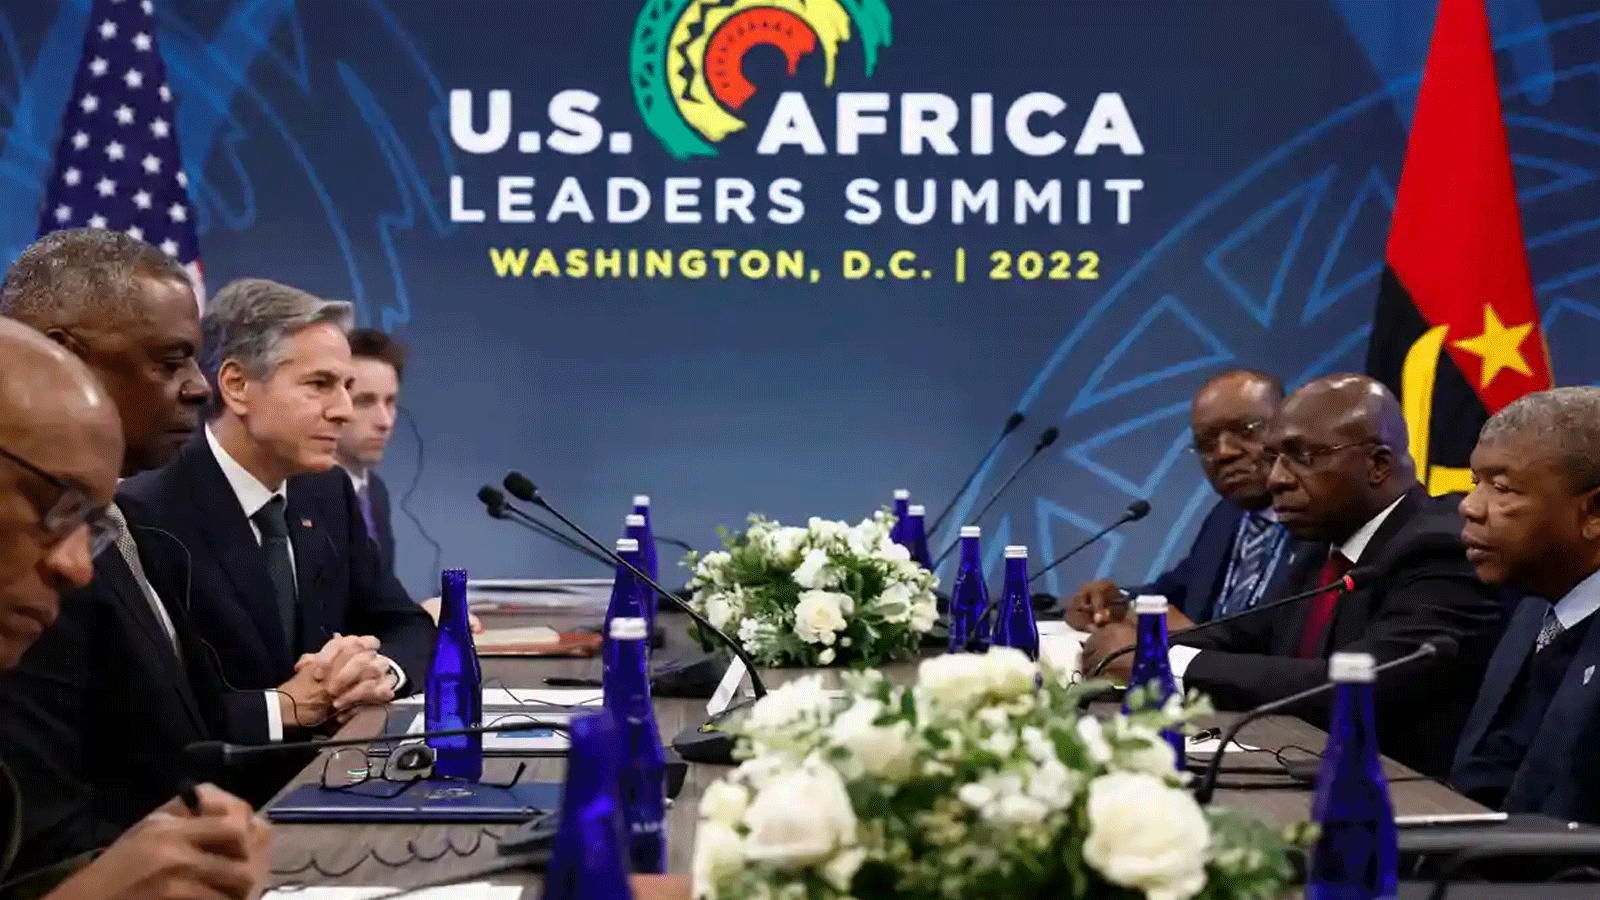  وزير الخارجية الأميركي، أنتوني بلينكين (الثالث من اليسار) ، ووزير الدفاع، لويد أوستن (الثاني من اليسار)، يلتقيان بالرئيس الأنغولي، جواو لورينسو (على اليمين)، خلال القمة